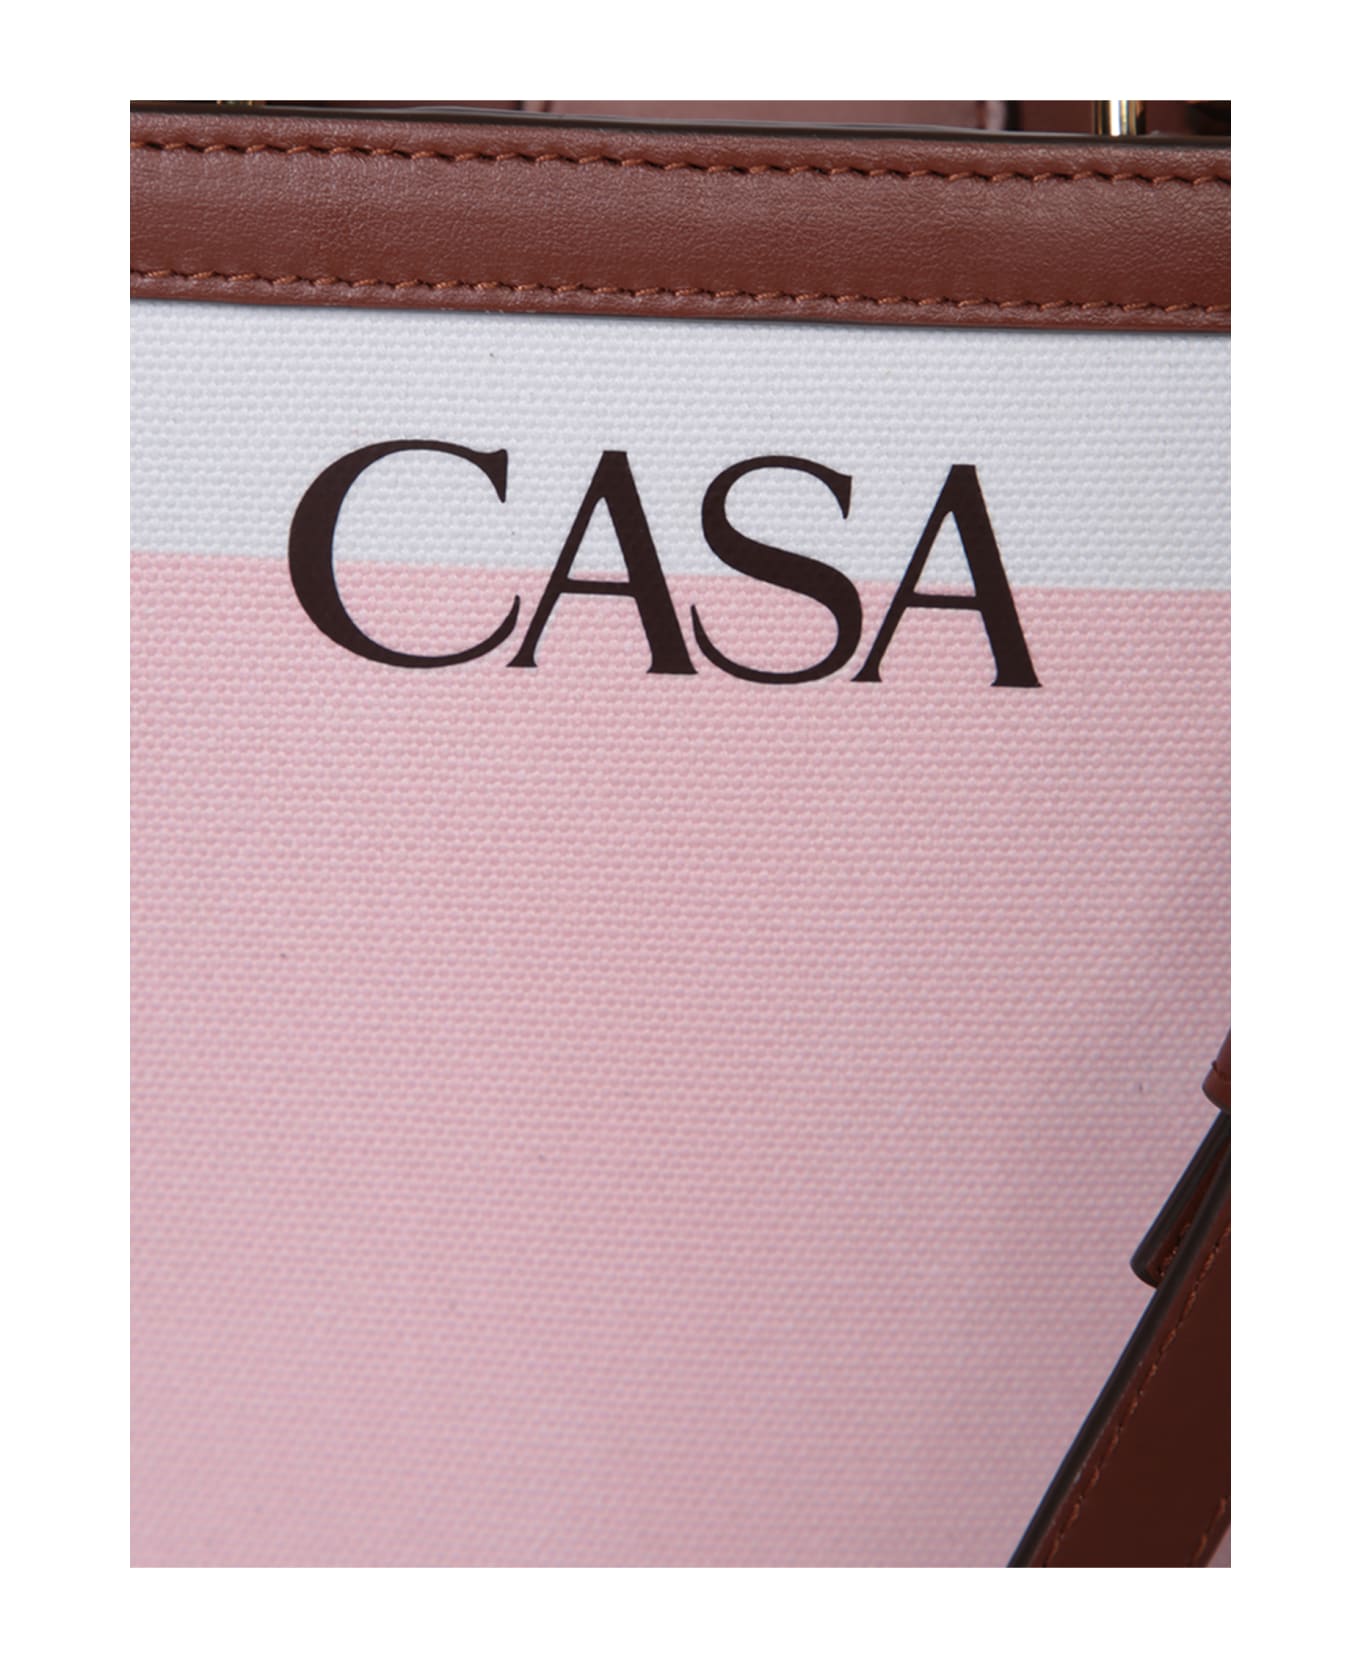 Casablanca 'mini Casa Canvas' Handbag - Multicolor